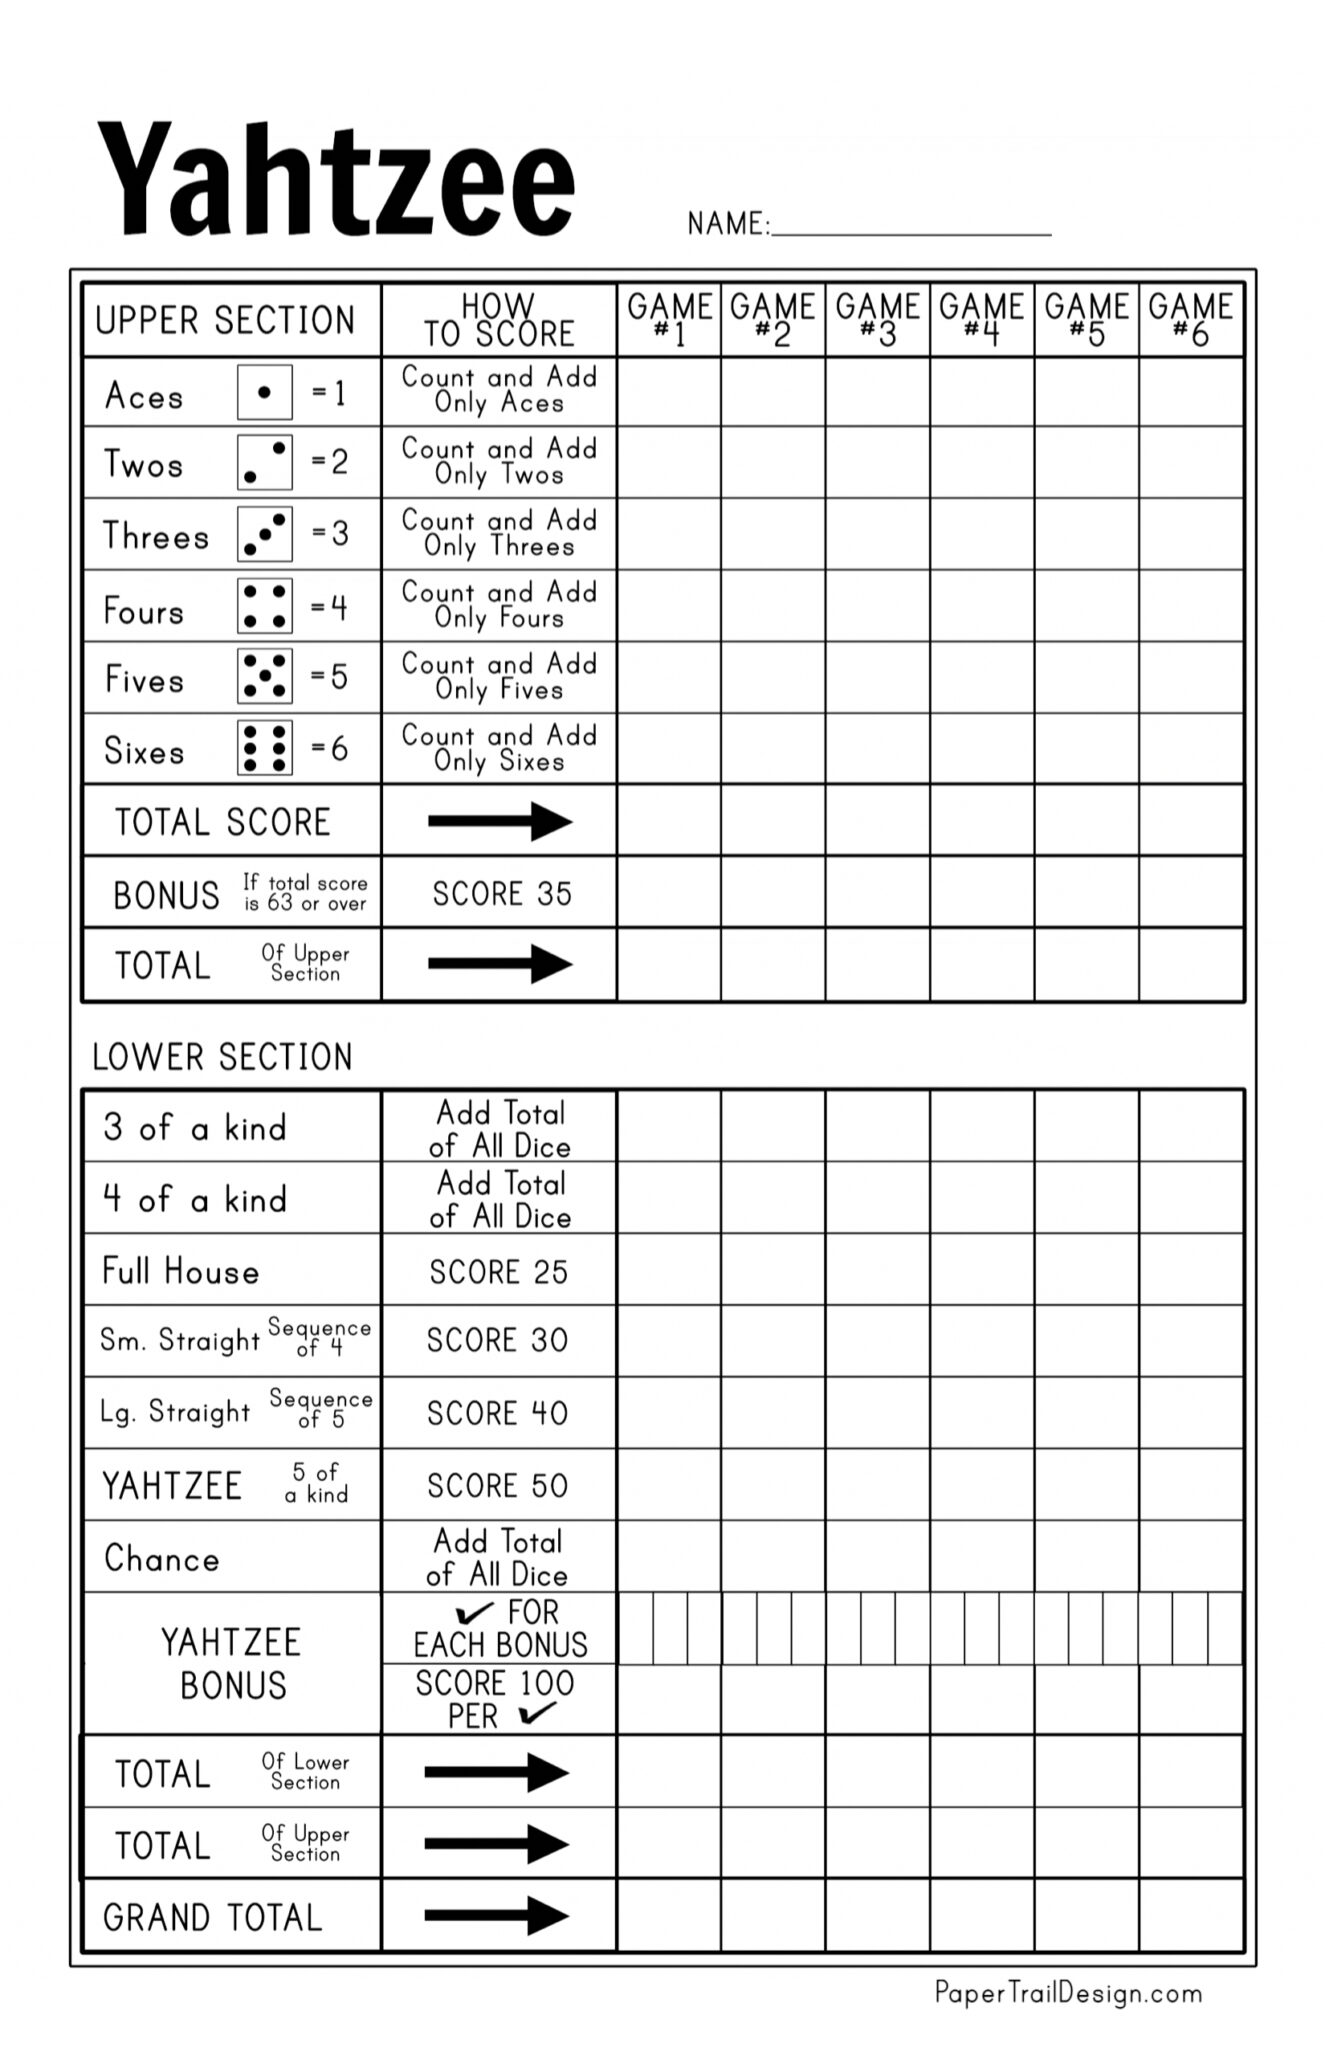 printable-yahtzee-score-sheets